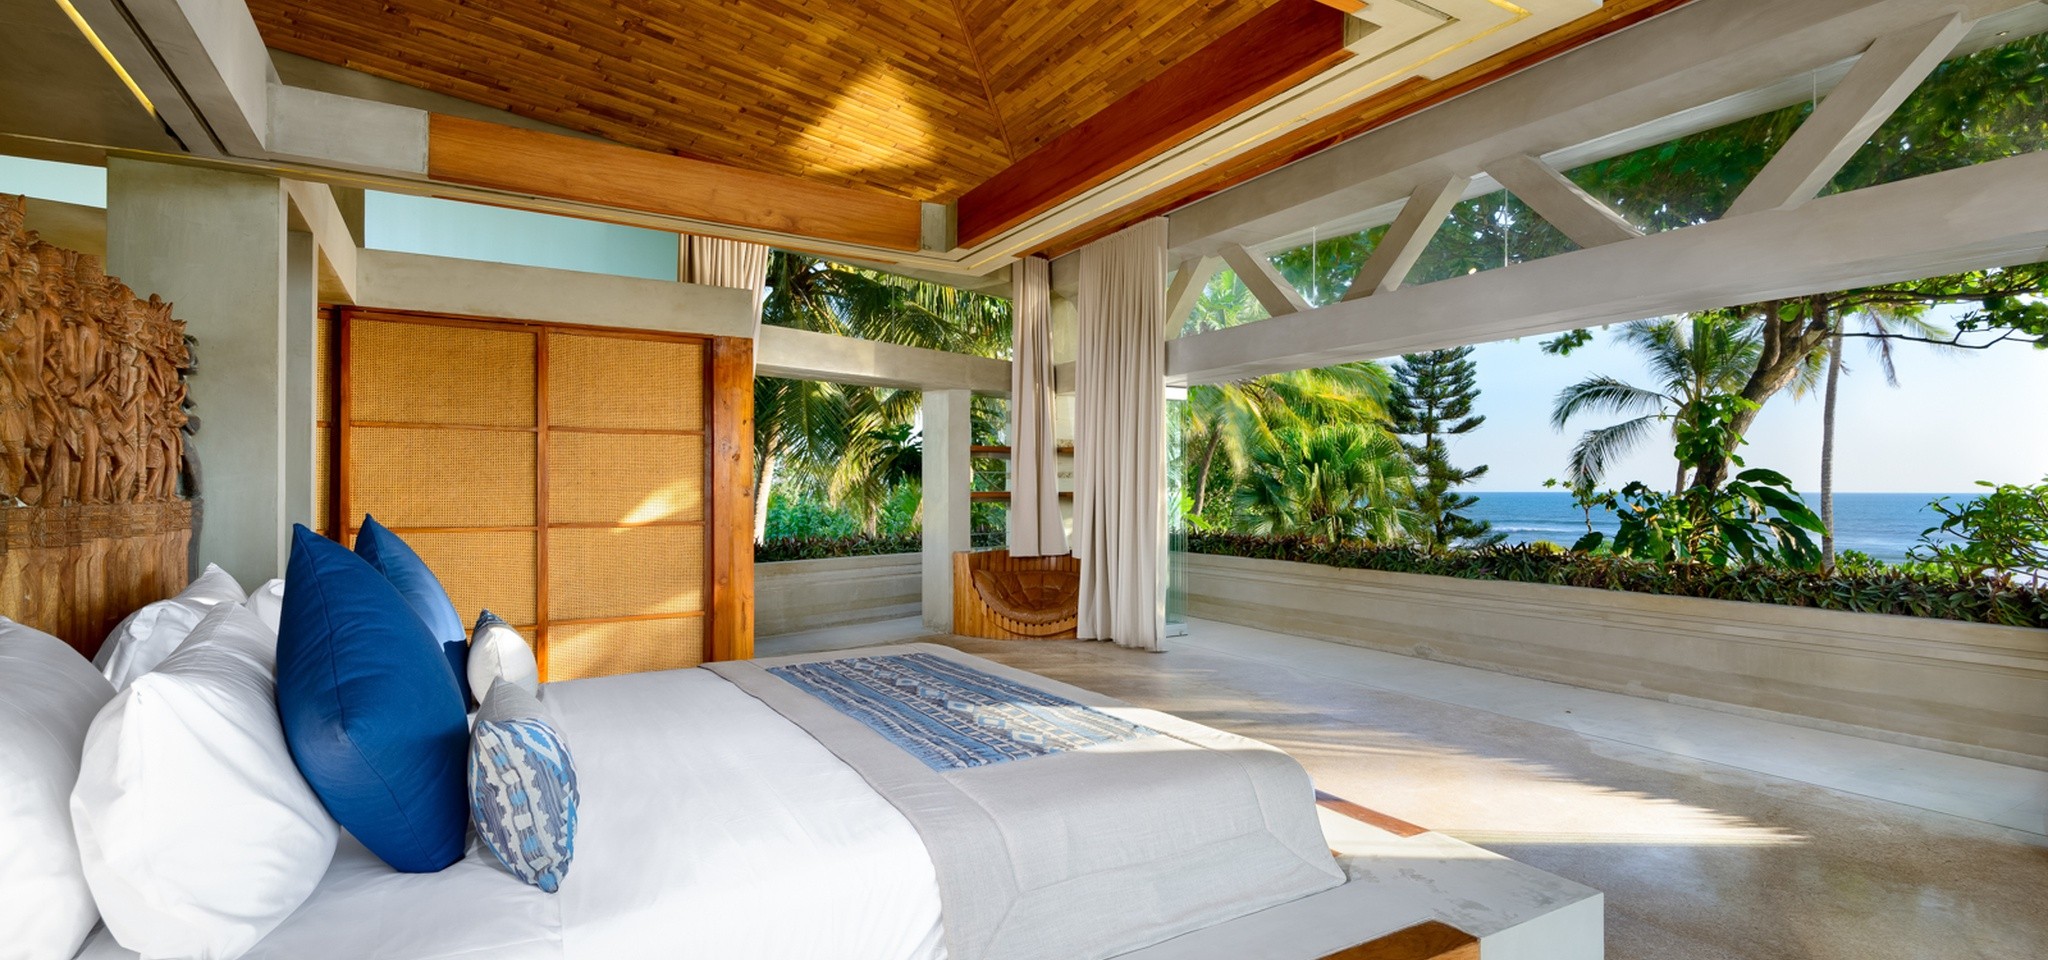 VillaVedas Bedroom1 – Villa Vedas – Bali – Indonesia